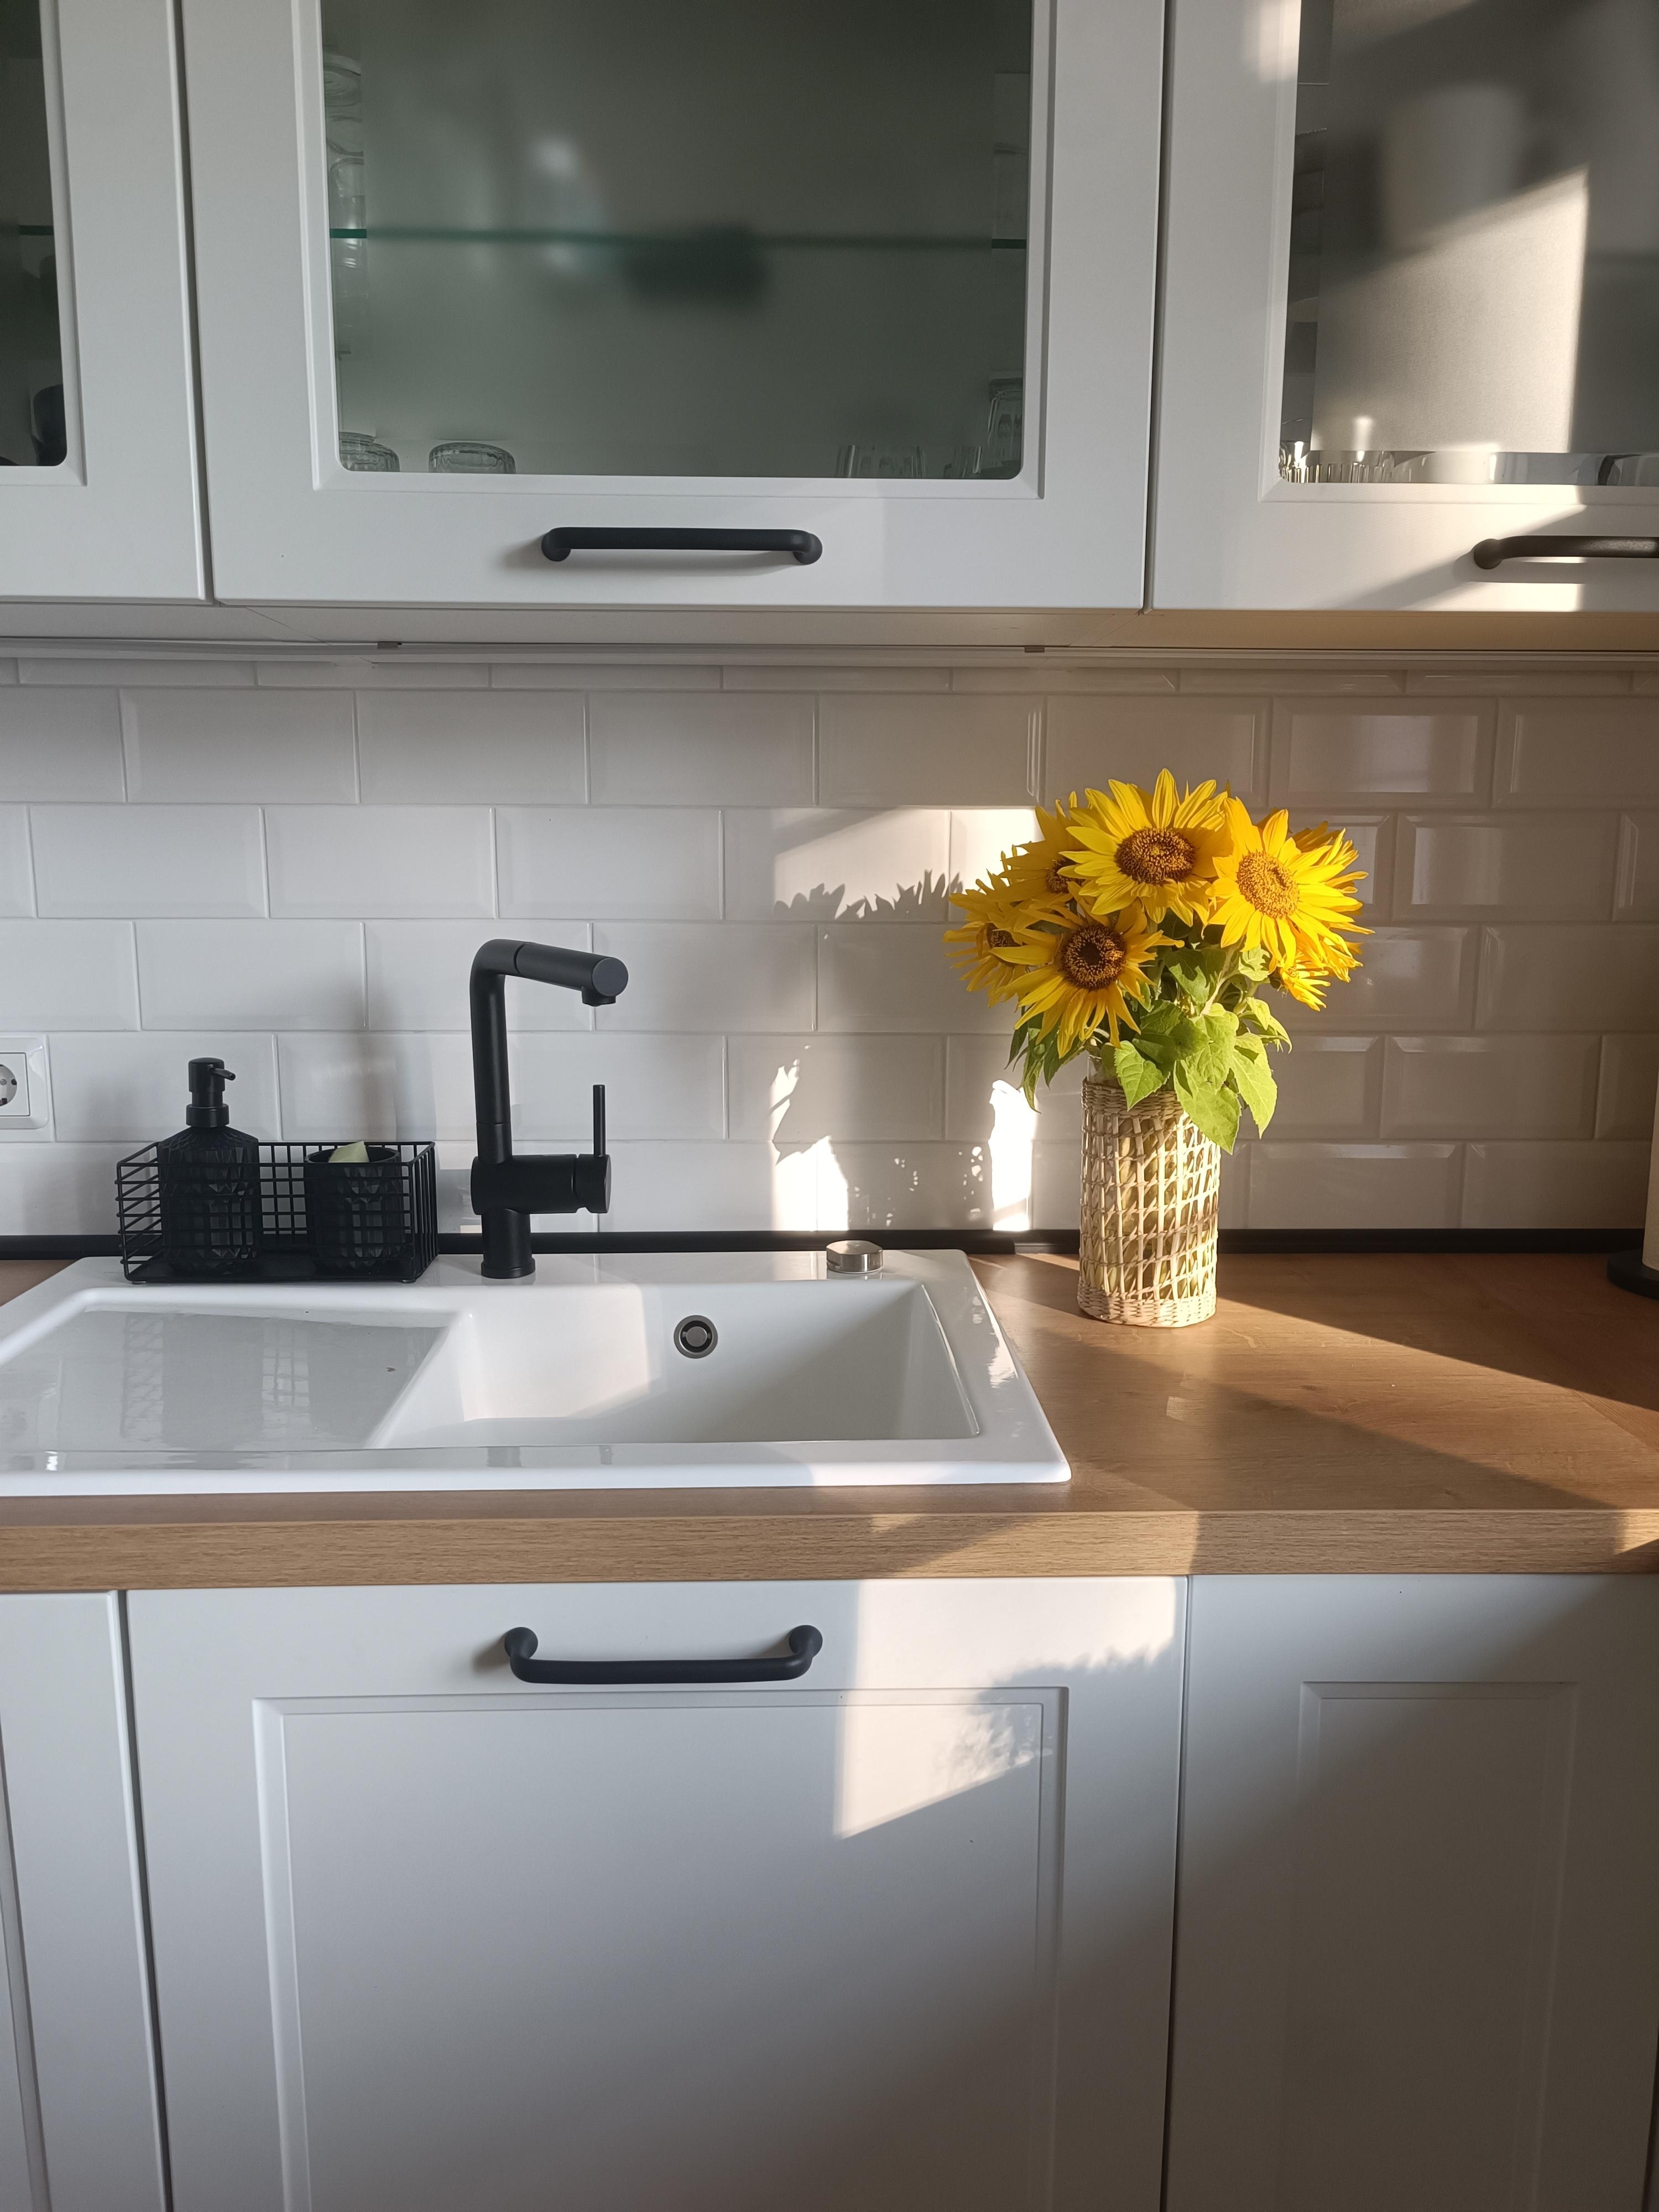 Sonnenblumen in der Küche ✨🌻 #sonnenblume #küche